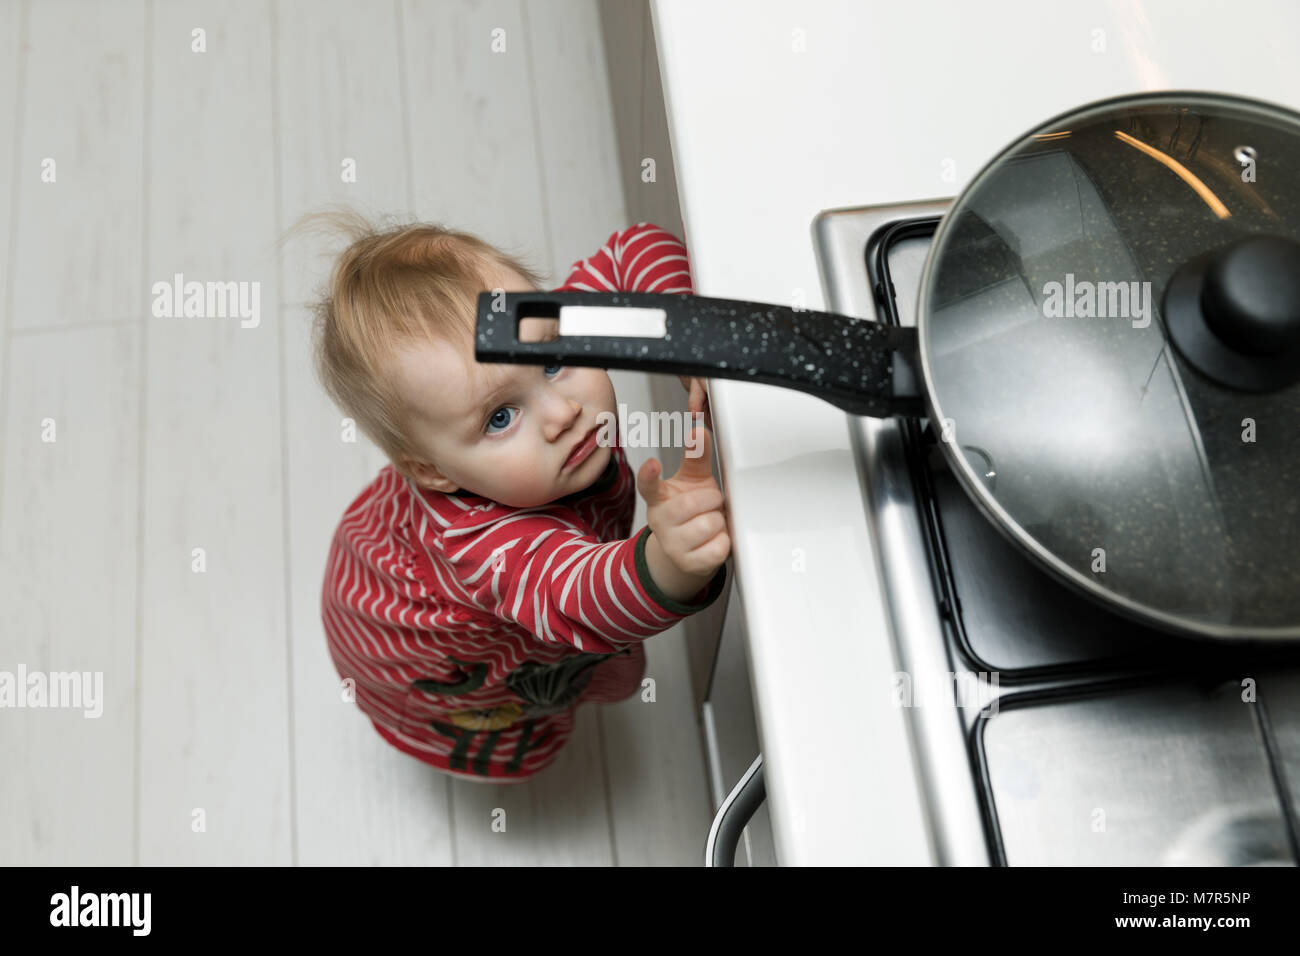 La sécurité des enfants à la maison - concept tout-petit pour atteindre le moule sur la cuisinière dans la cuisine Banque D'Images